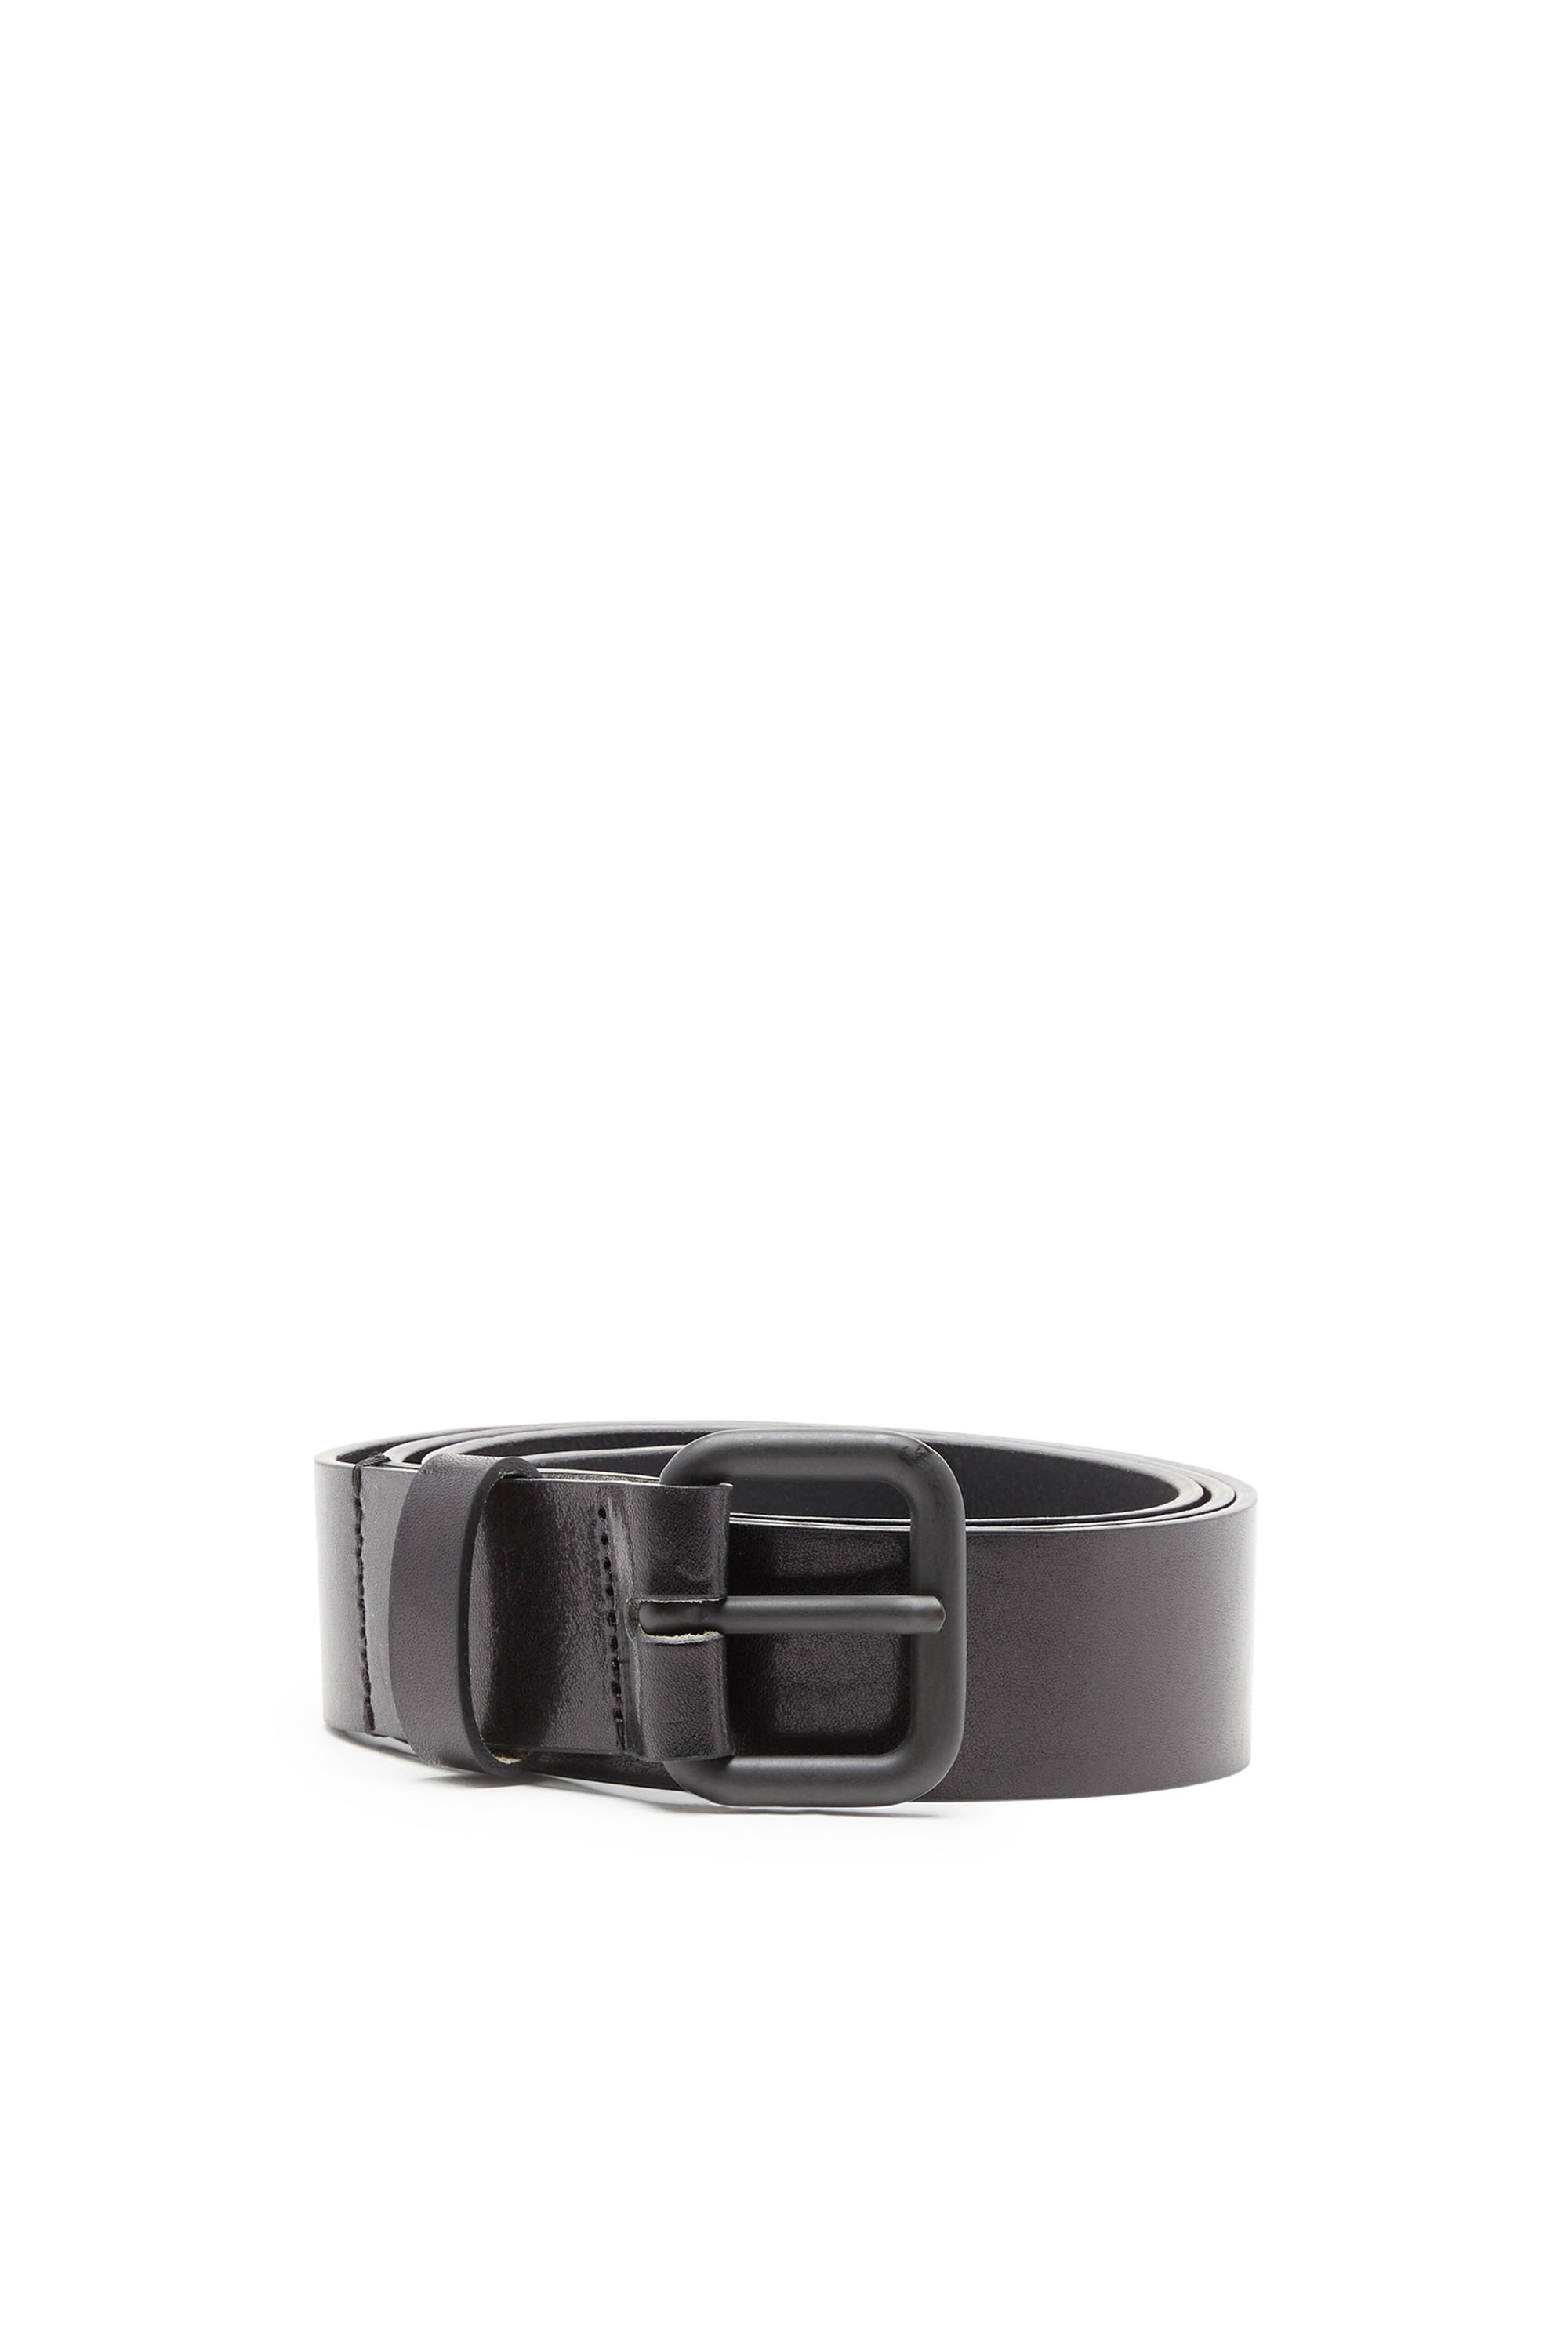 Diesel - Cinturón de cuero con aplicación de metal con el logotipo - Cinturones - Hombre - Negro